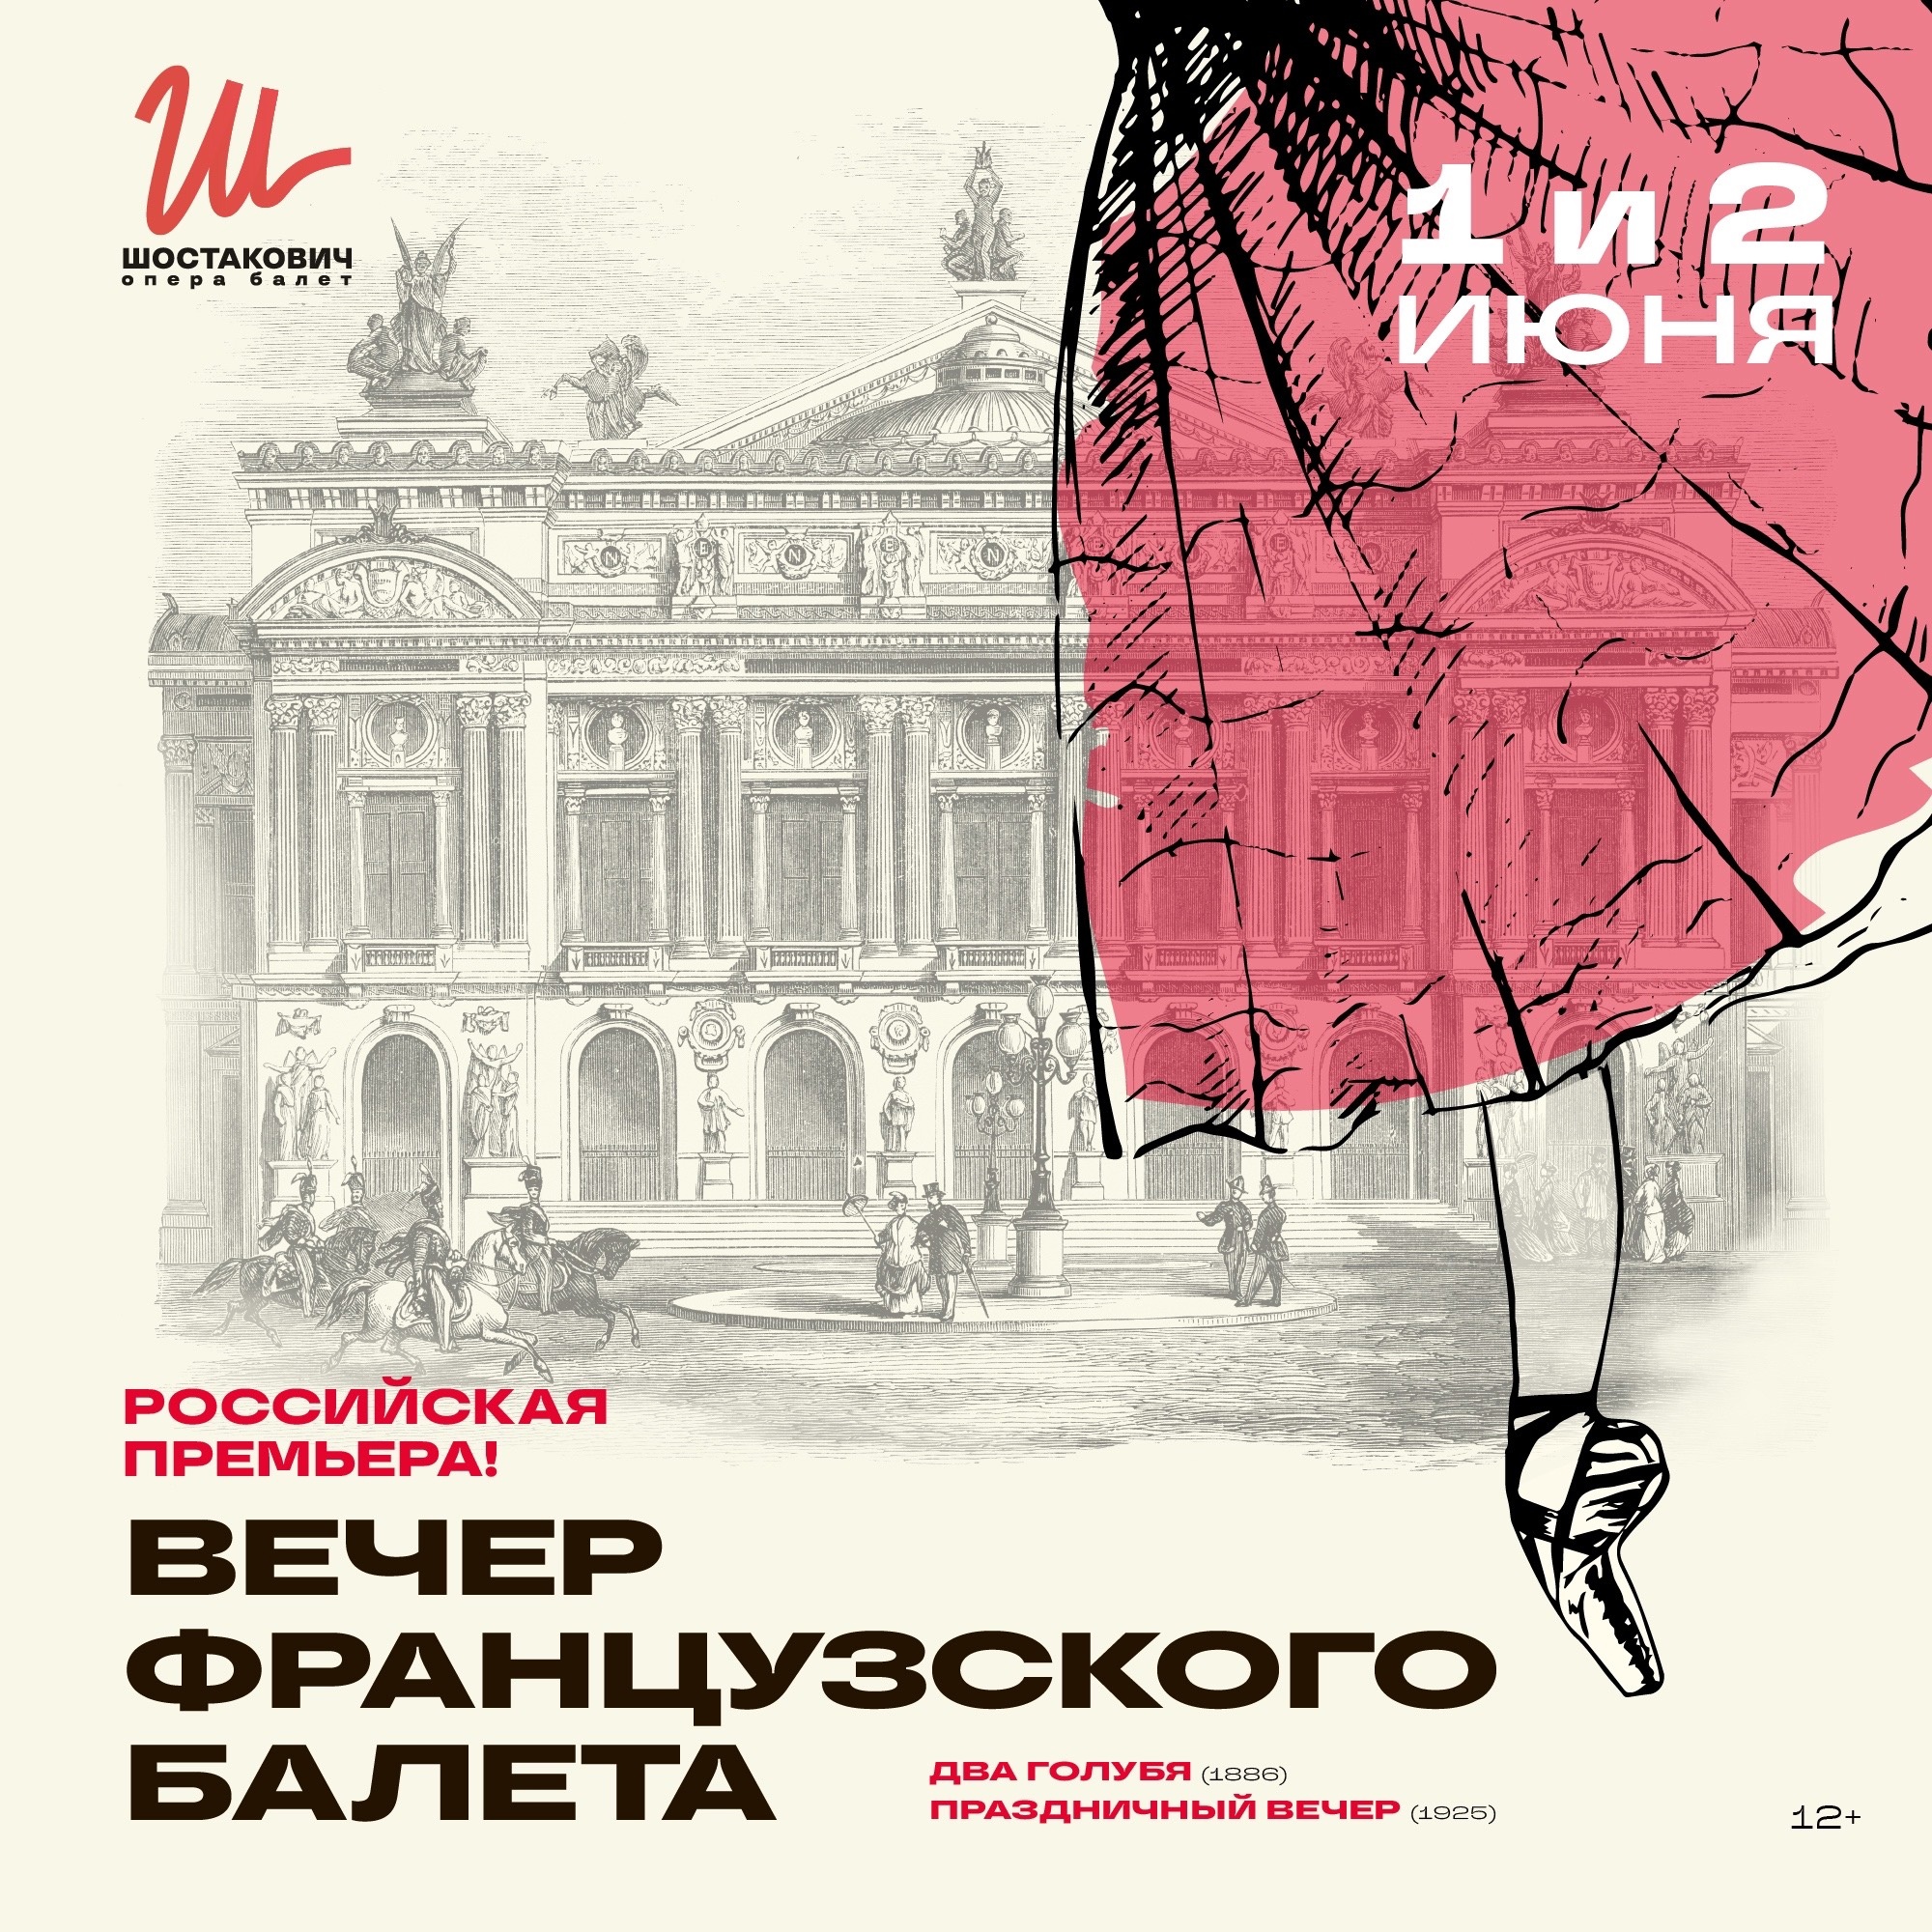 Шостакович Опера Балет представляет российскую премьеру “Вечера французских балетов”